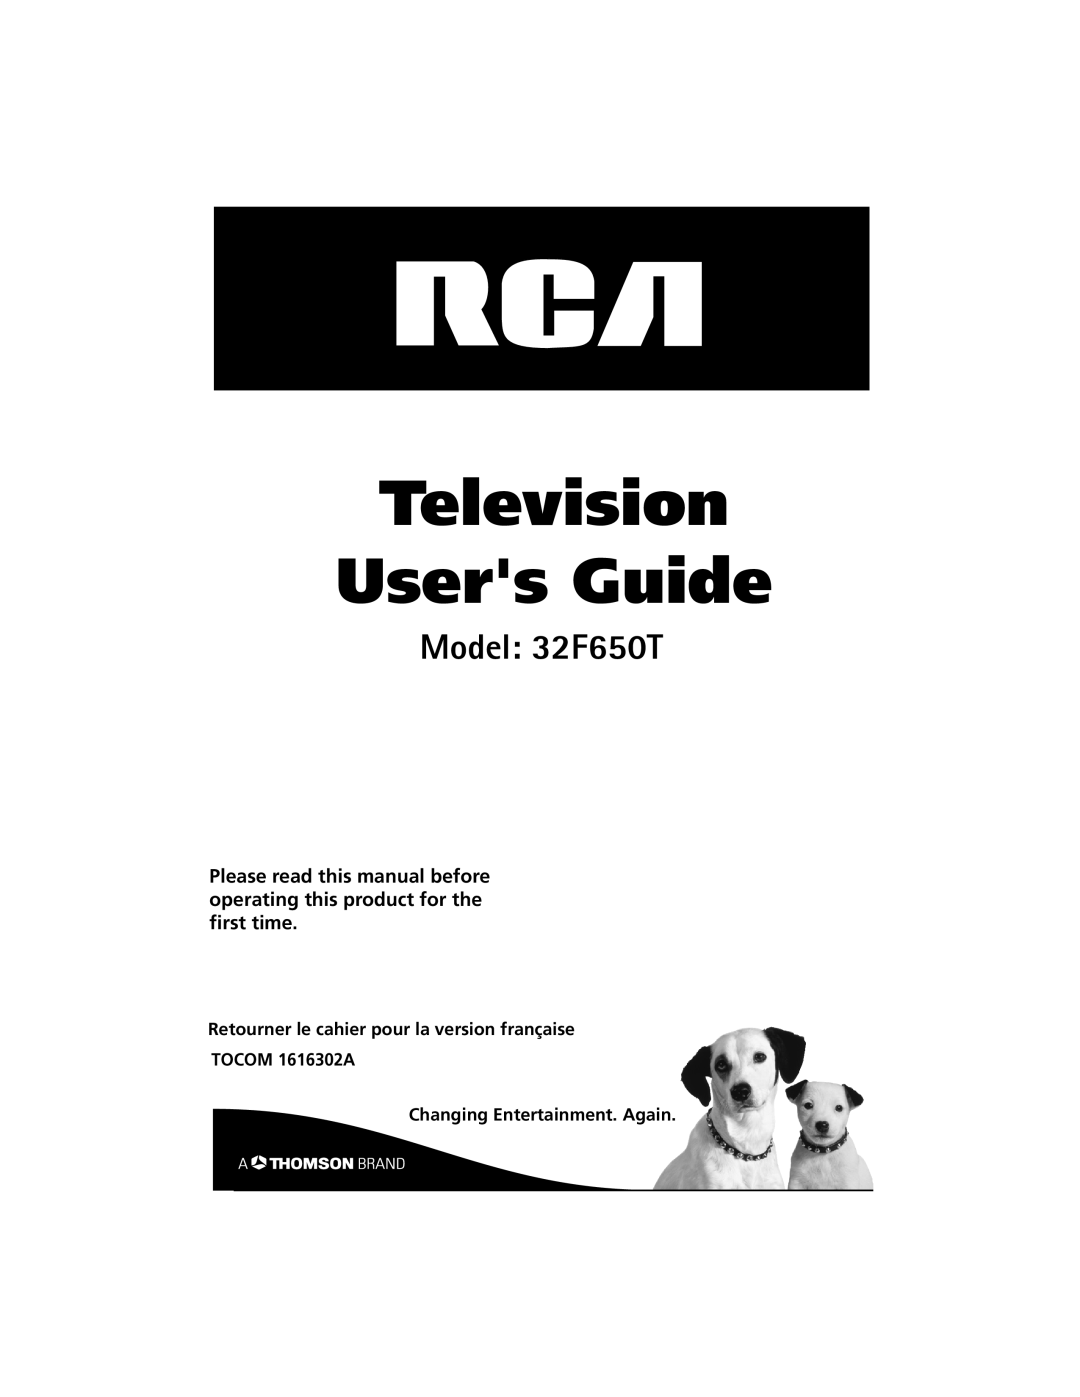 RCA manual Television Users Guide, Model 32F650T, Retourner le cahier pour la version française TOCOM 1616302A 